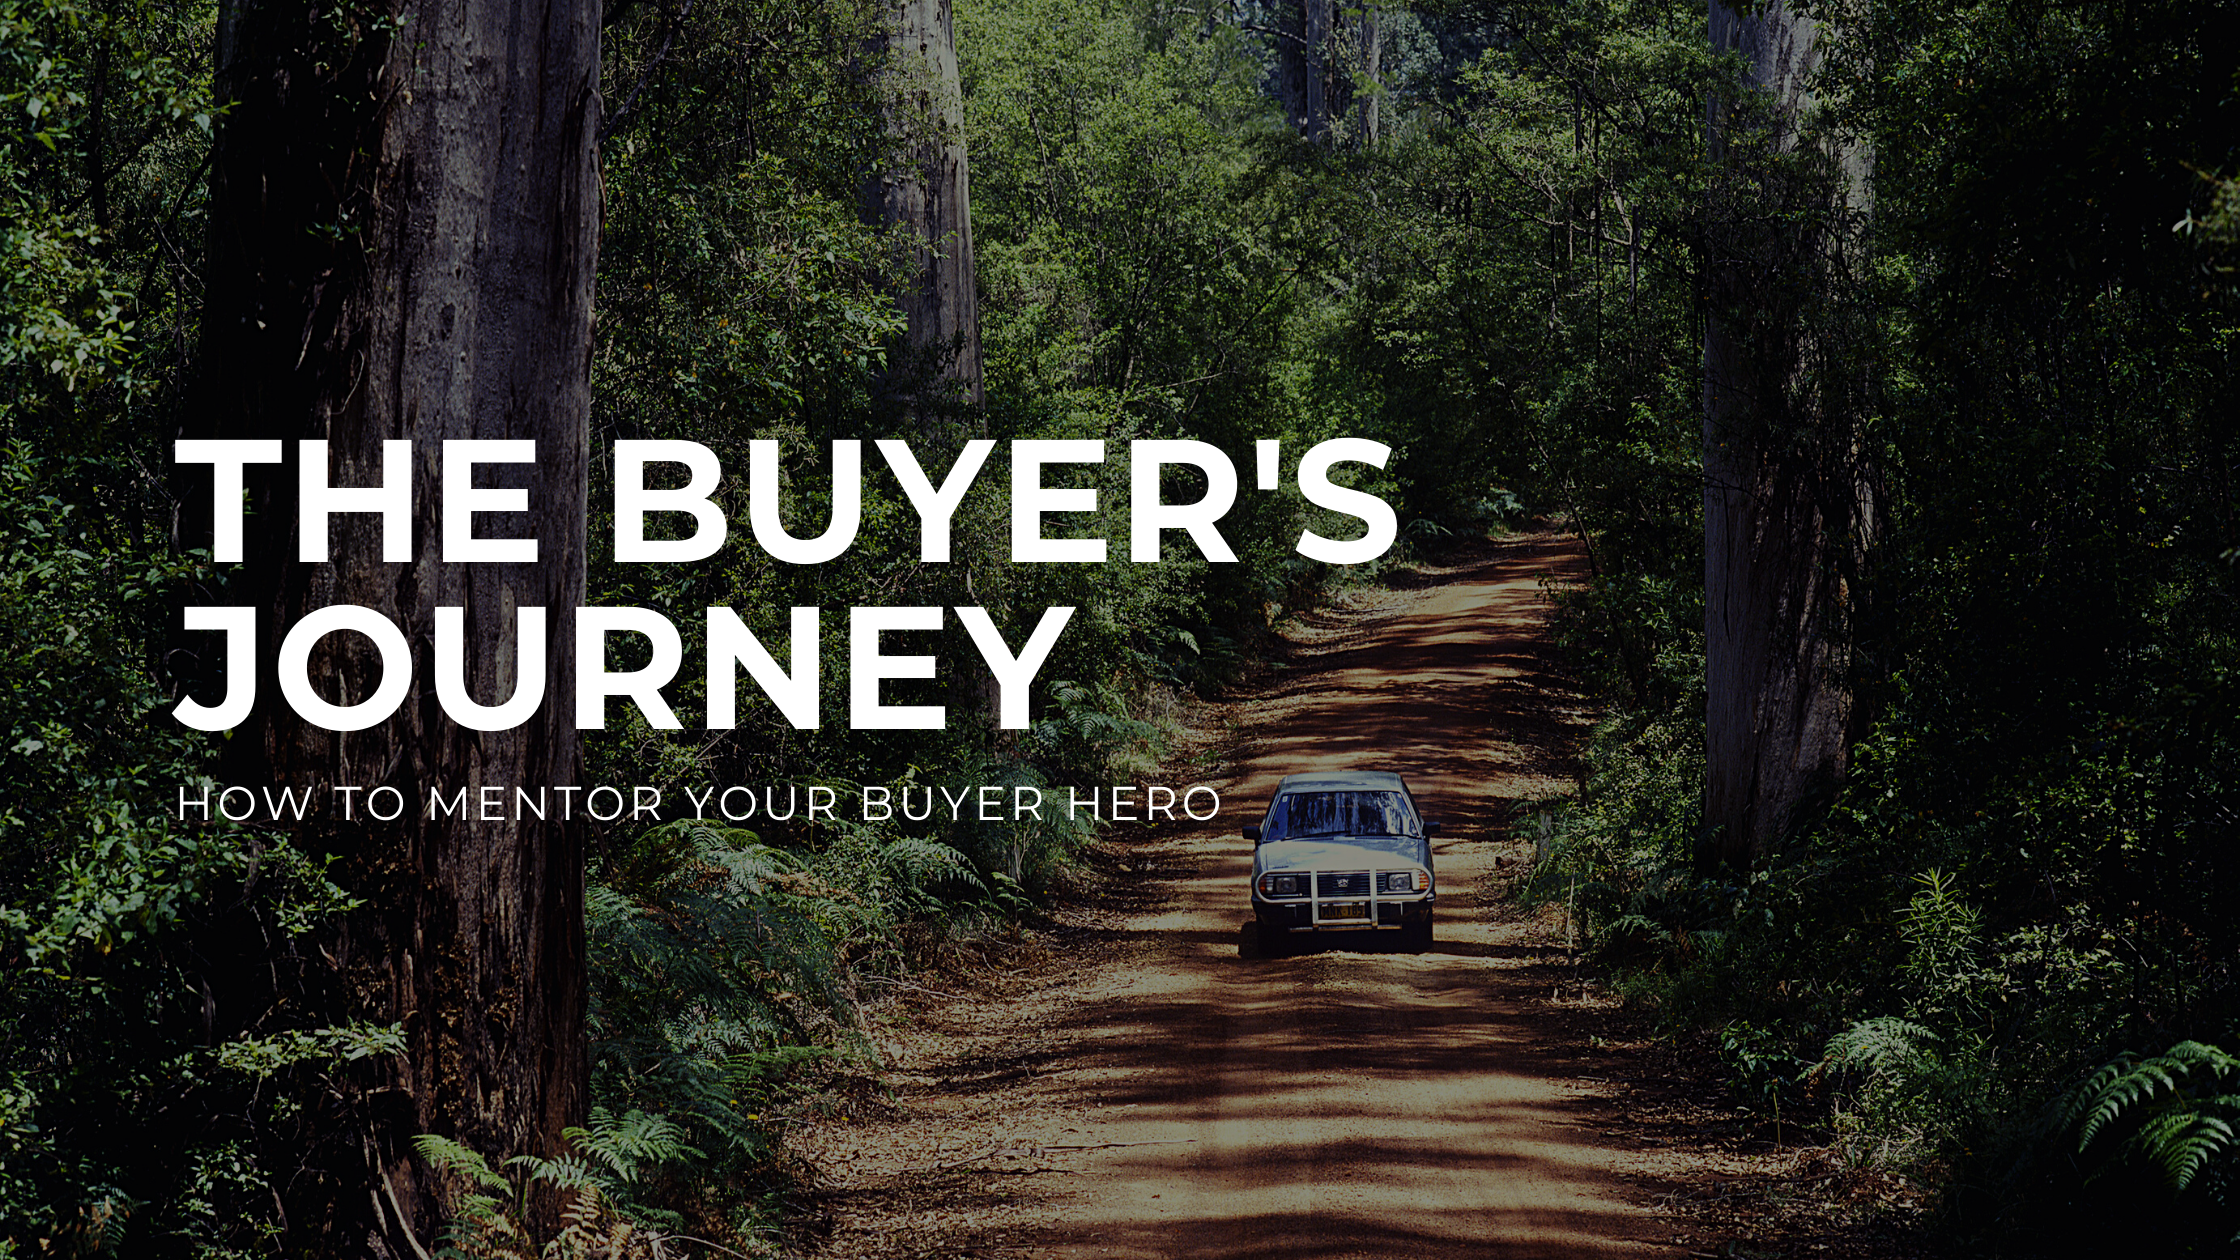 The Buyer’s Journey: How to Mentor the Buyer Hero